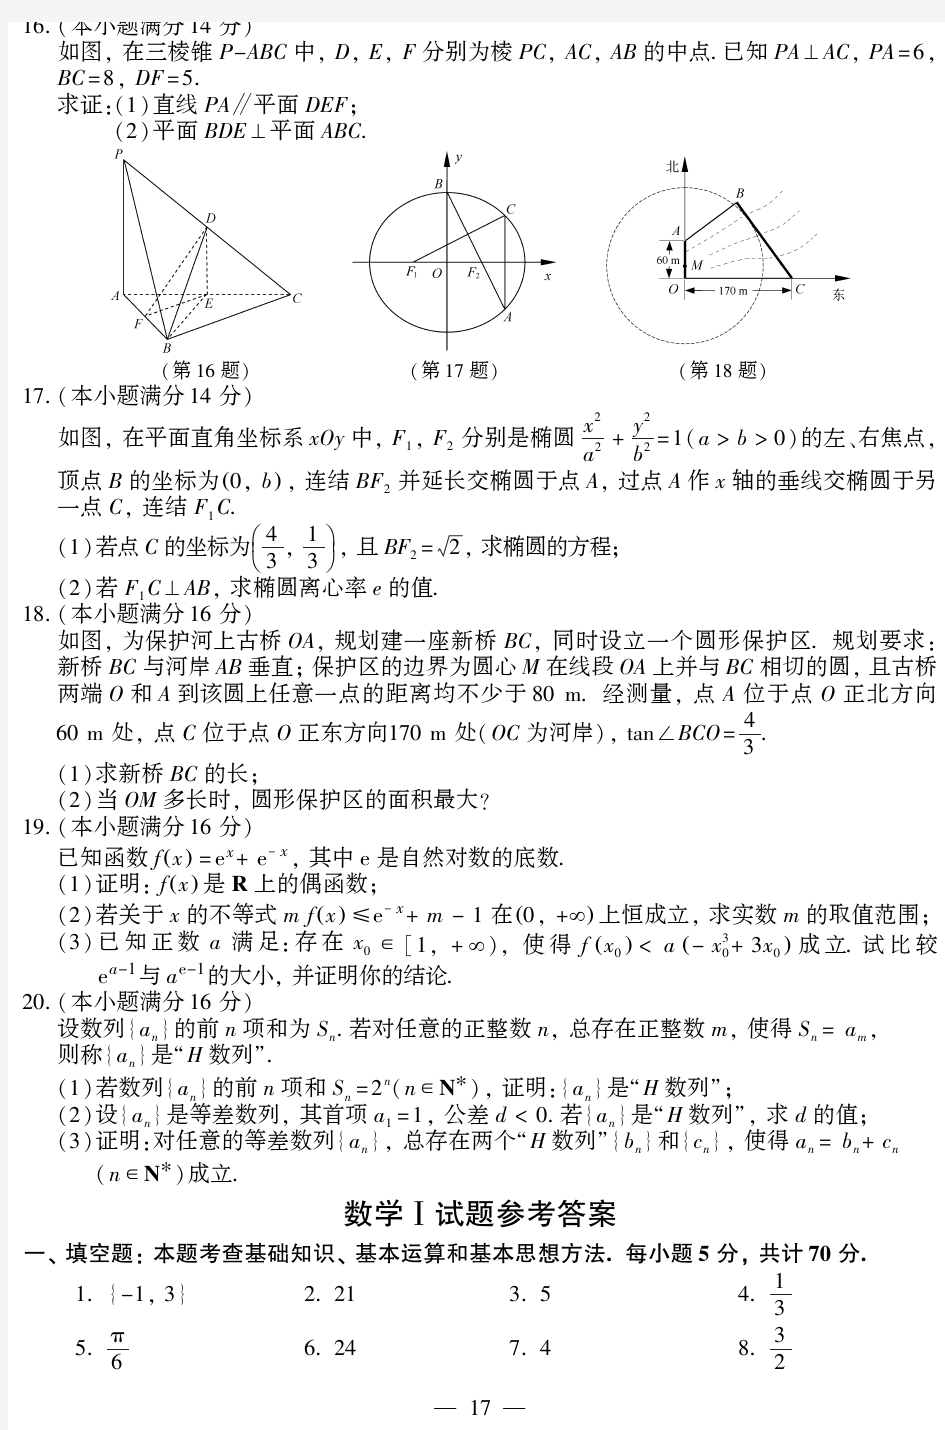 2014年江苏高考数学试卷及答案